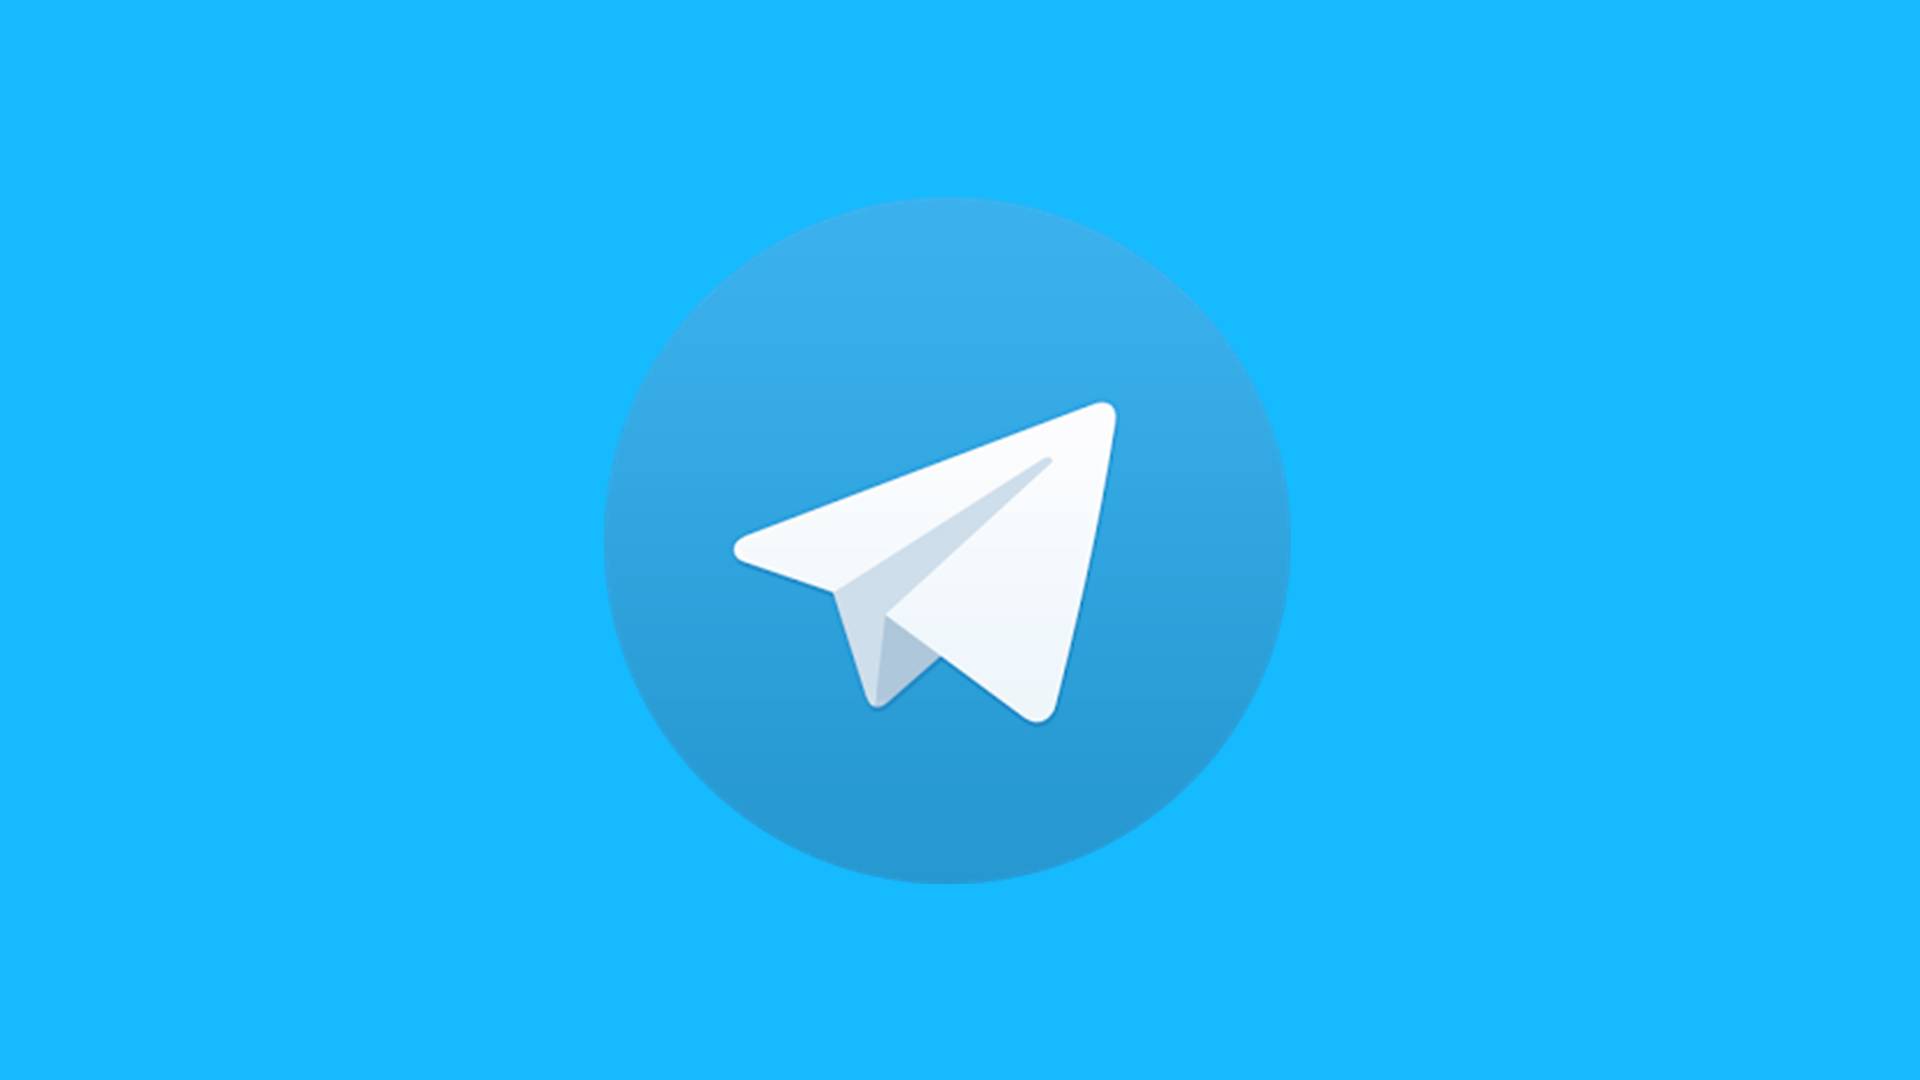 "Зеленое в голубом" - Наш канал в Telegram!